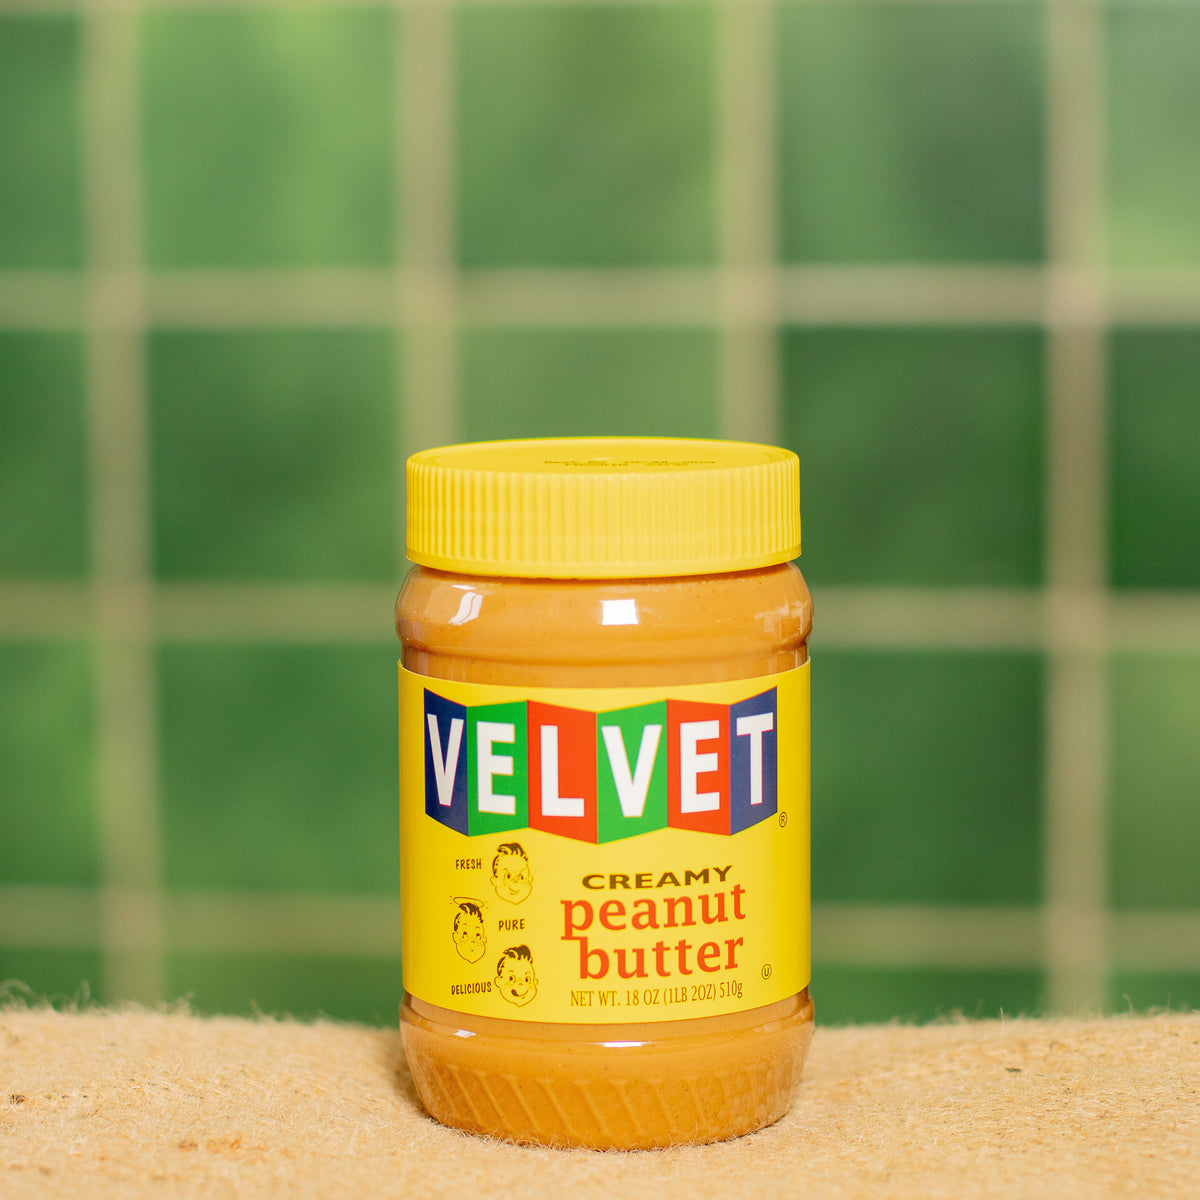 Velvet Peanut Butter - Smooth